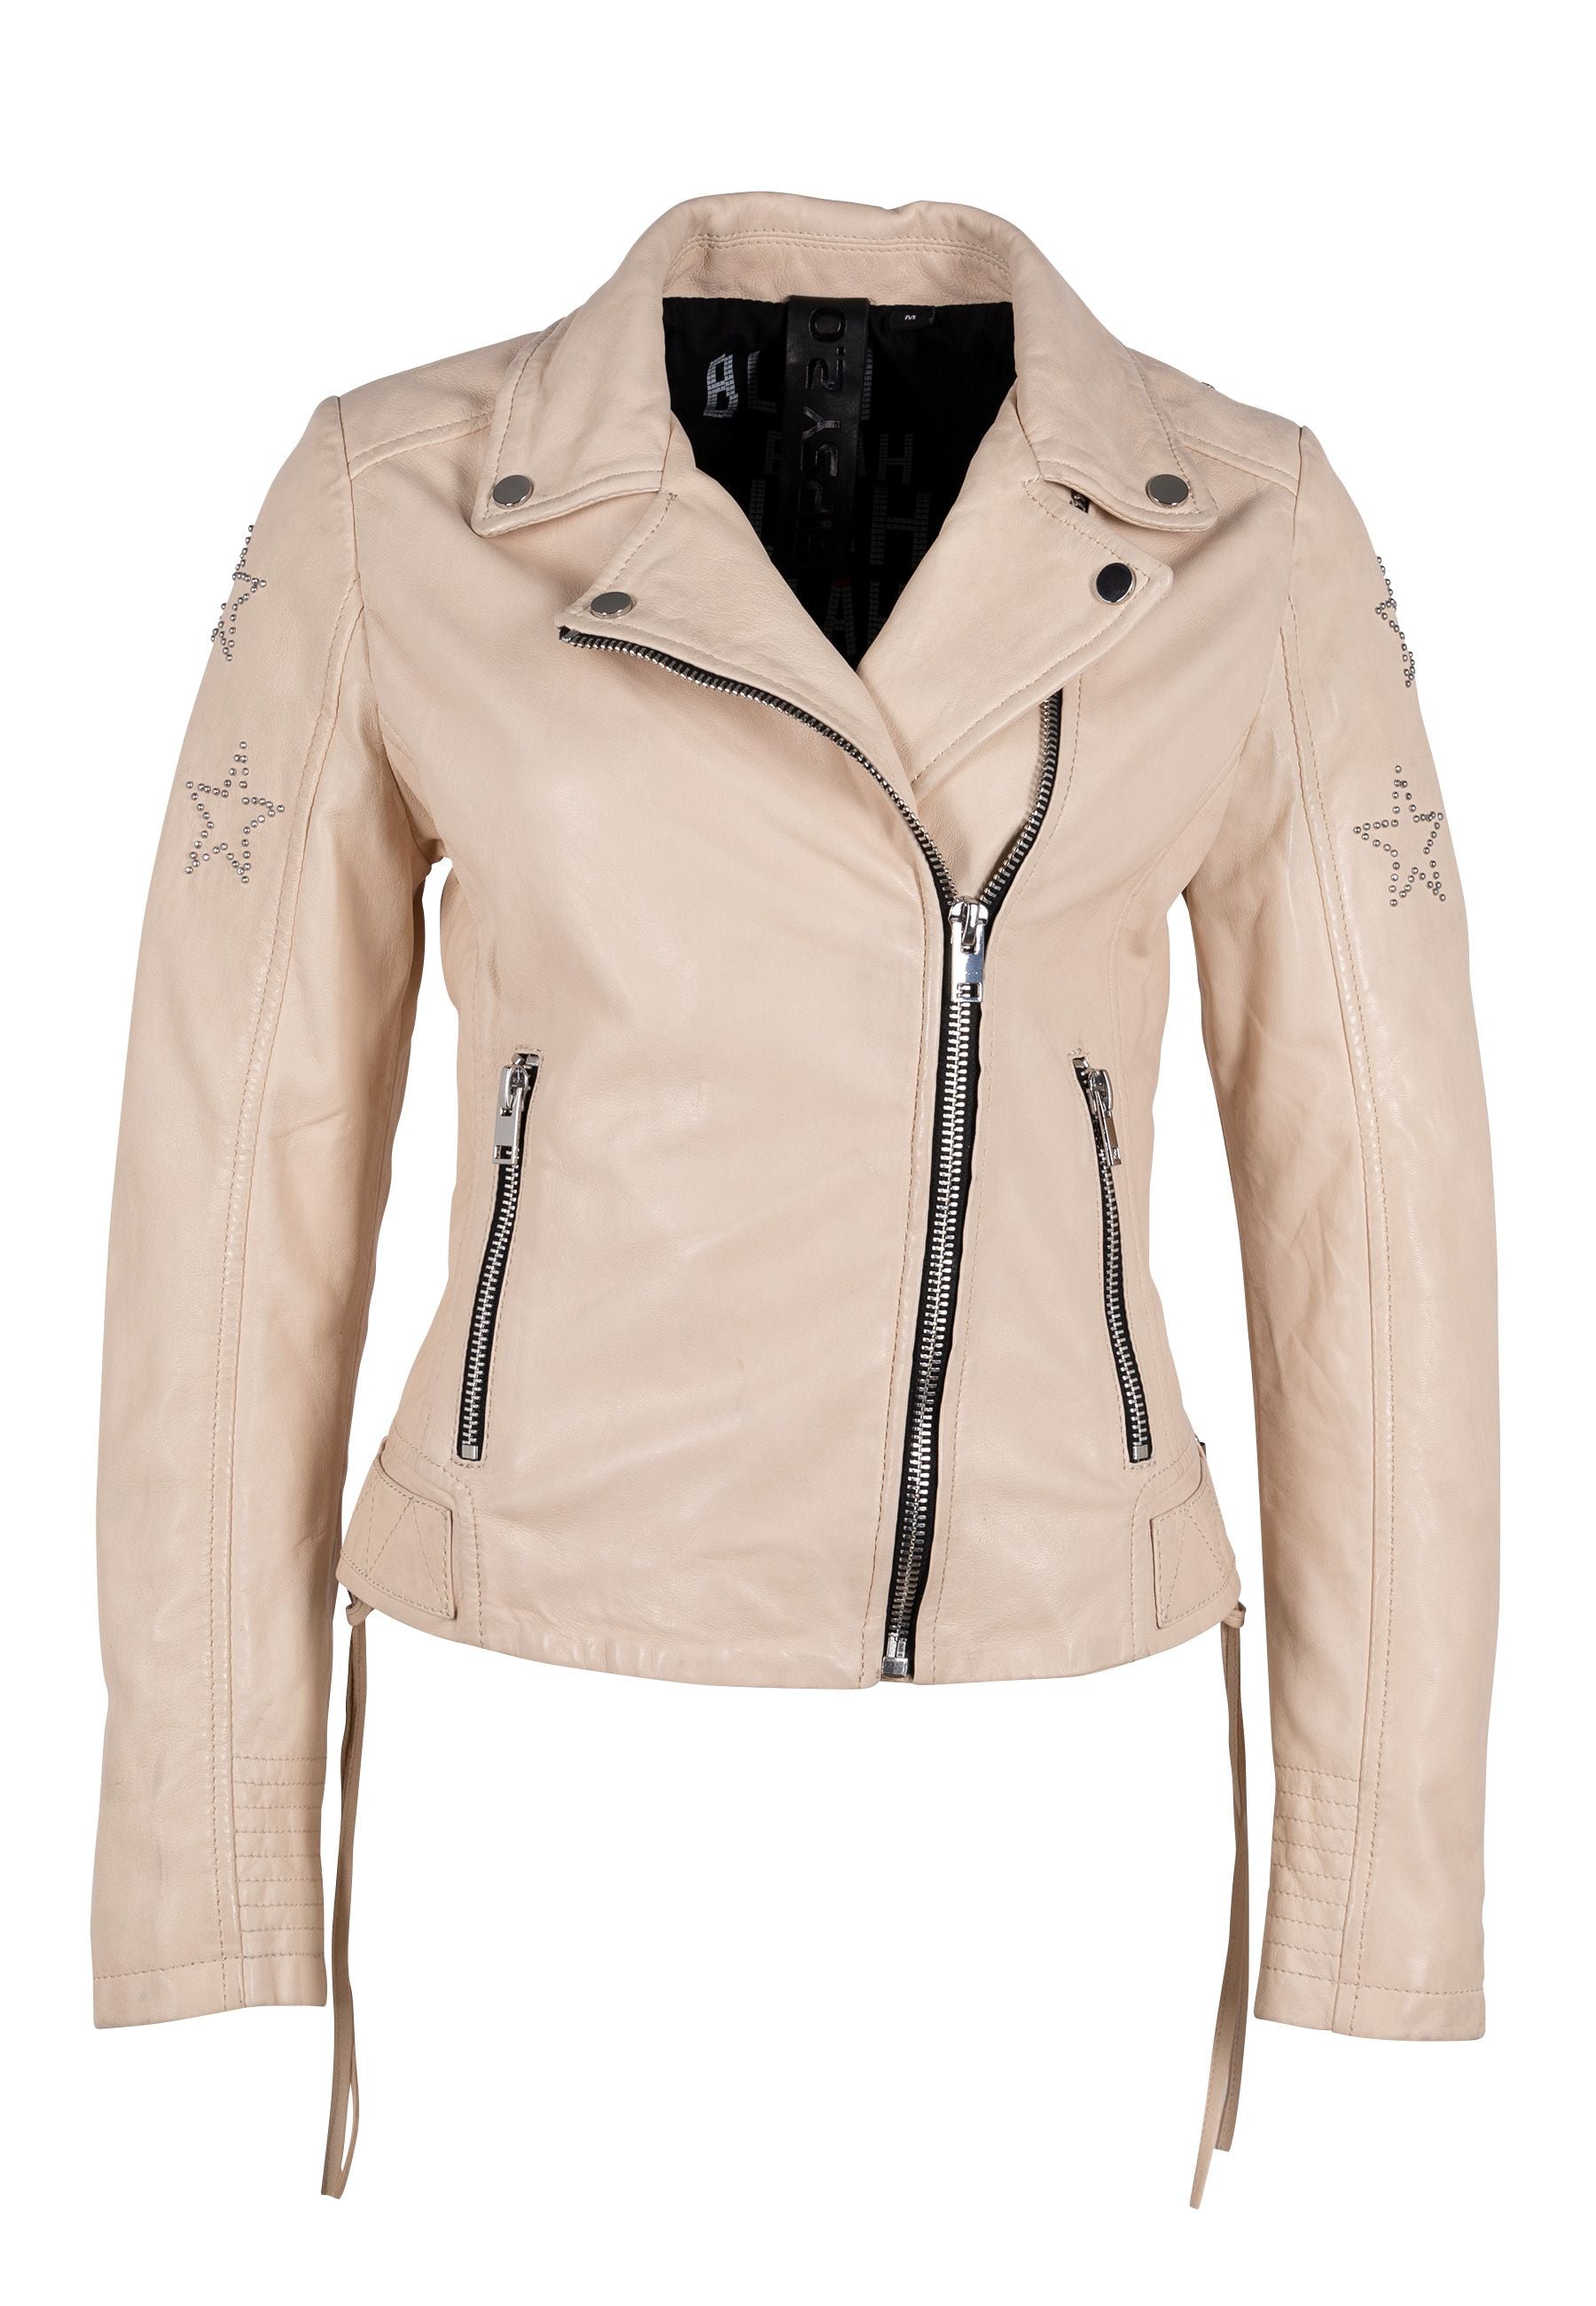 Wana Leather Jacket, White, mauritiusleather – Slim Fit